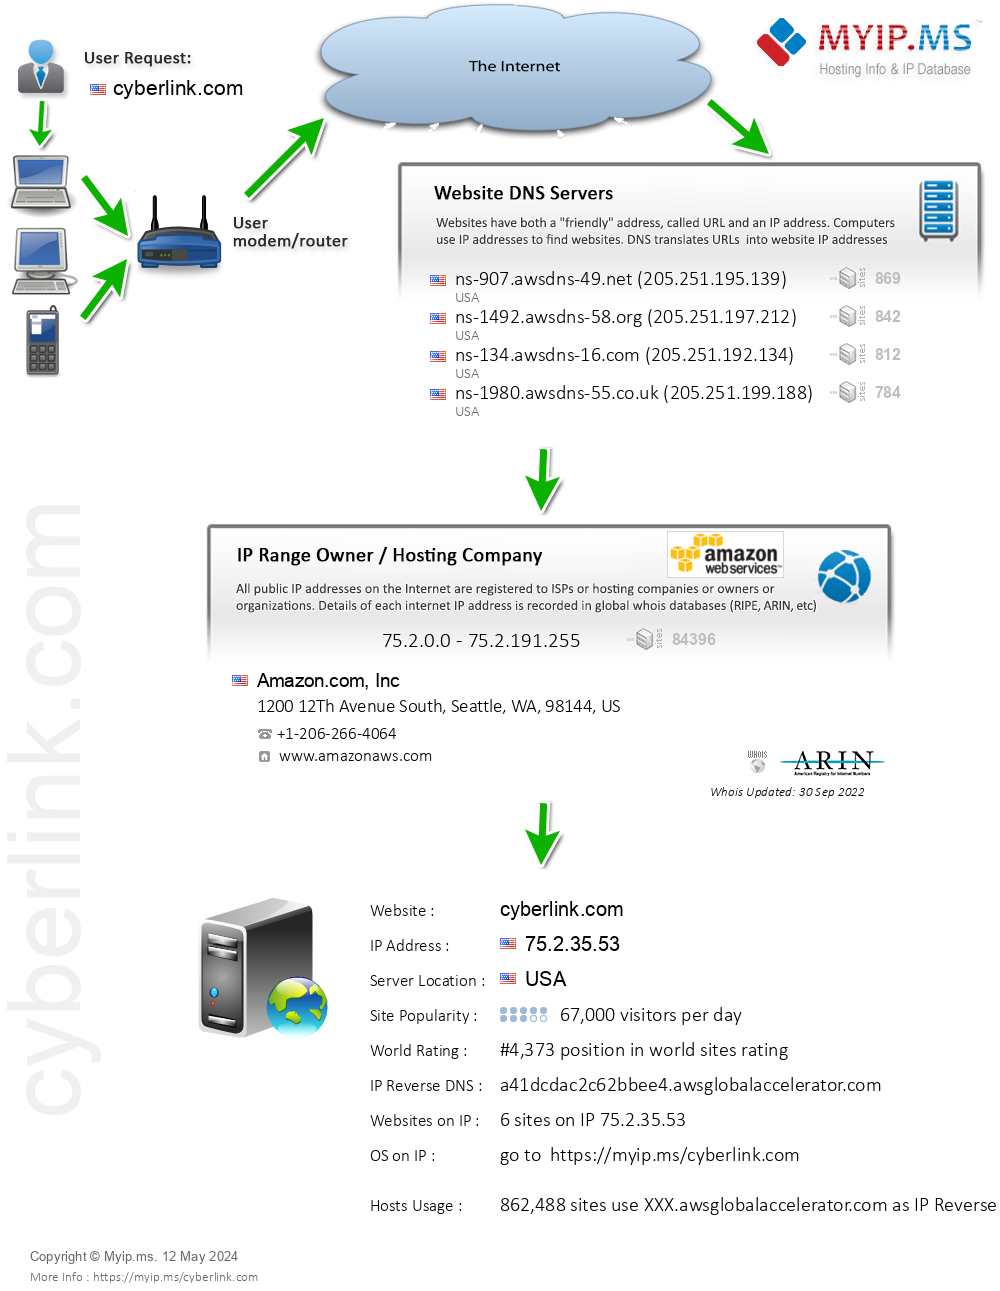 Cyberlink.com - Website Hosting Visual IP Diagram